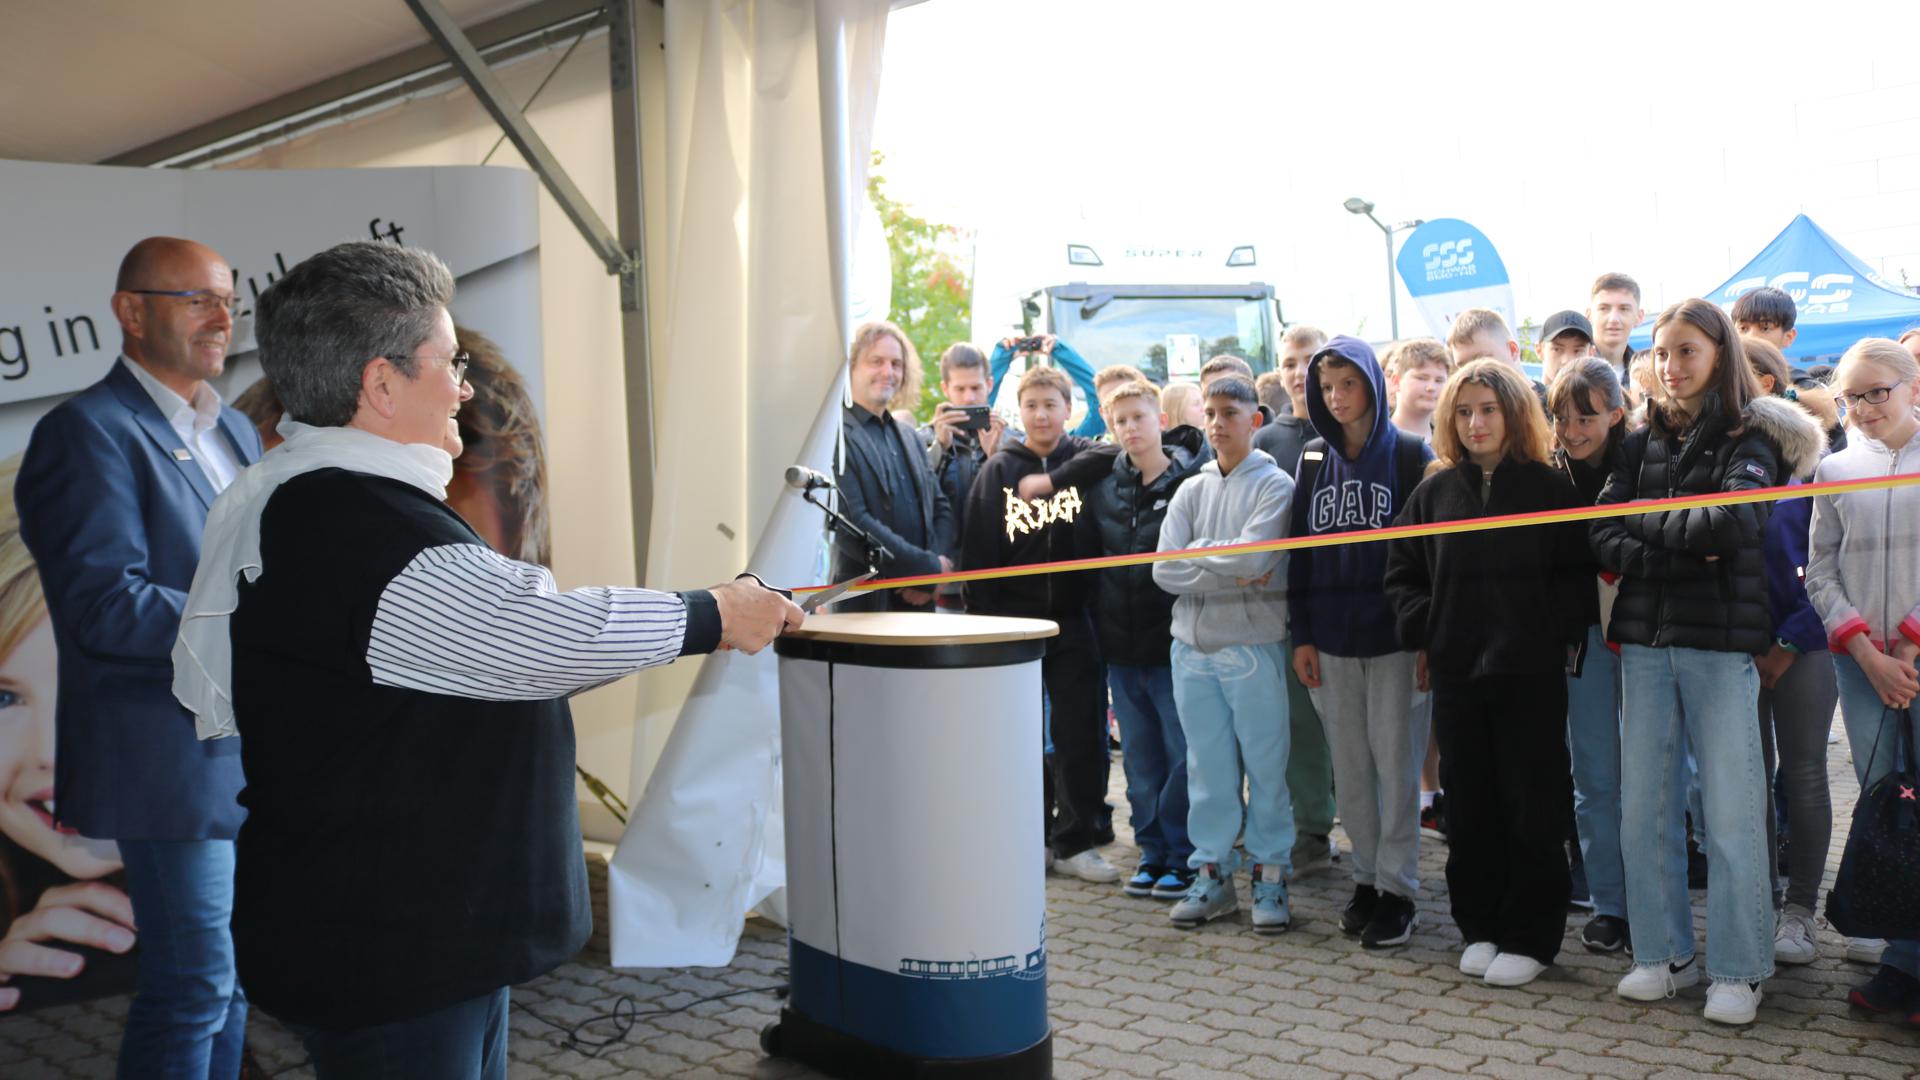 
Oberbürgermeisterin Petra Becker eröffnet die Ausbildungsmesse in Stutensee mit einem Schnitt durchs Band.